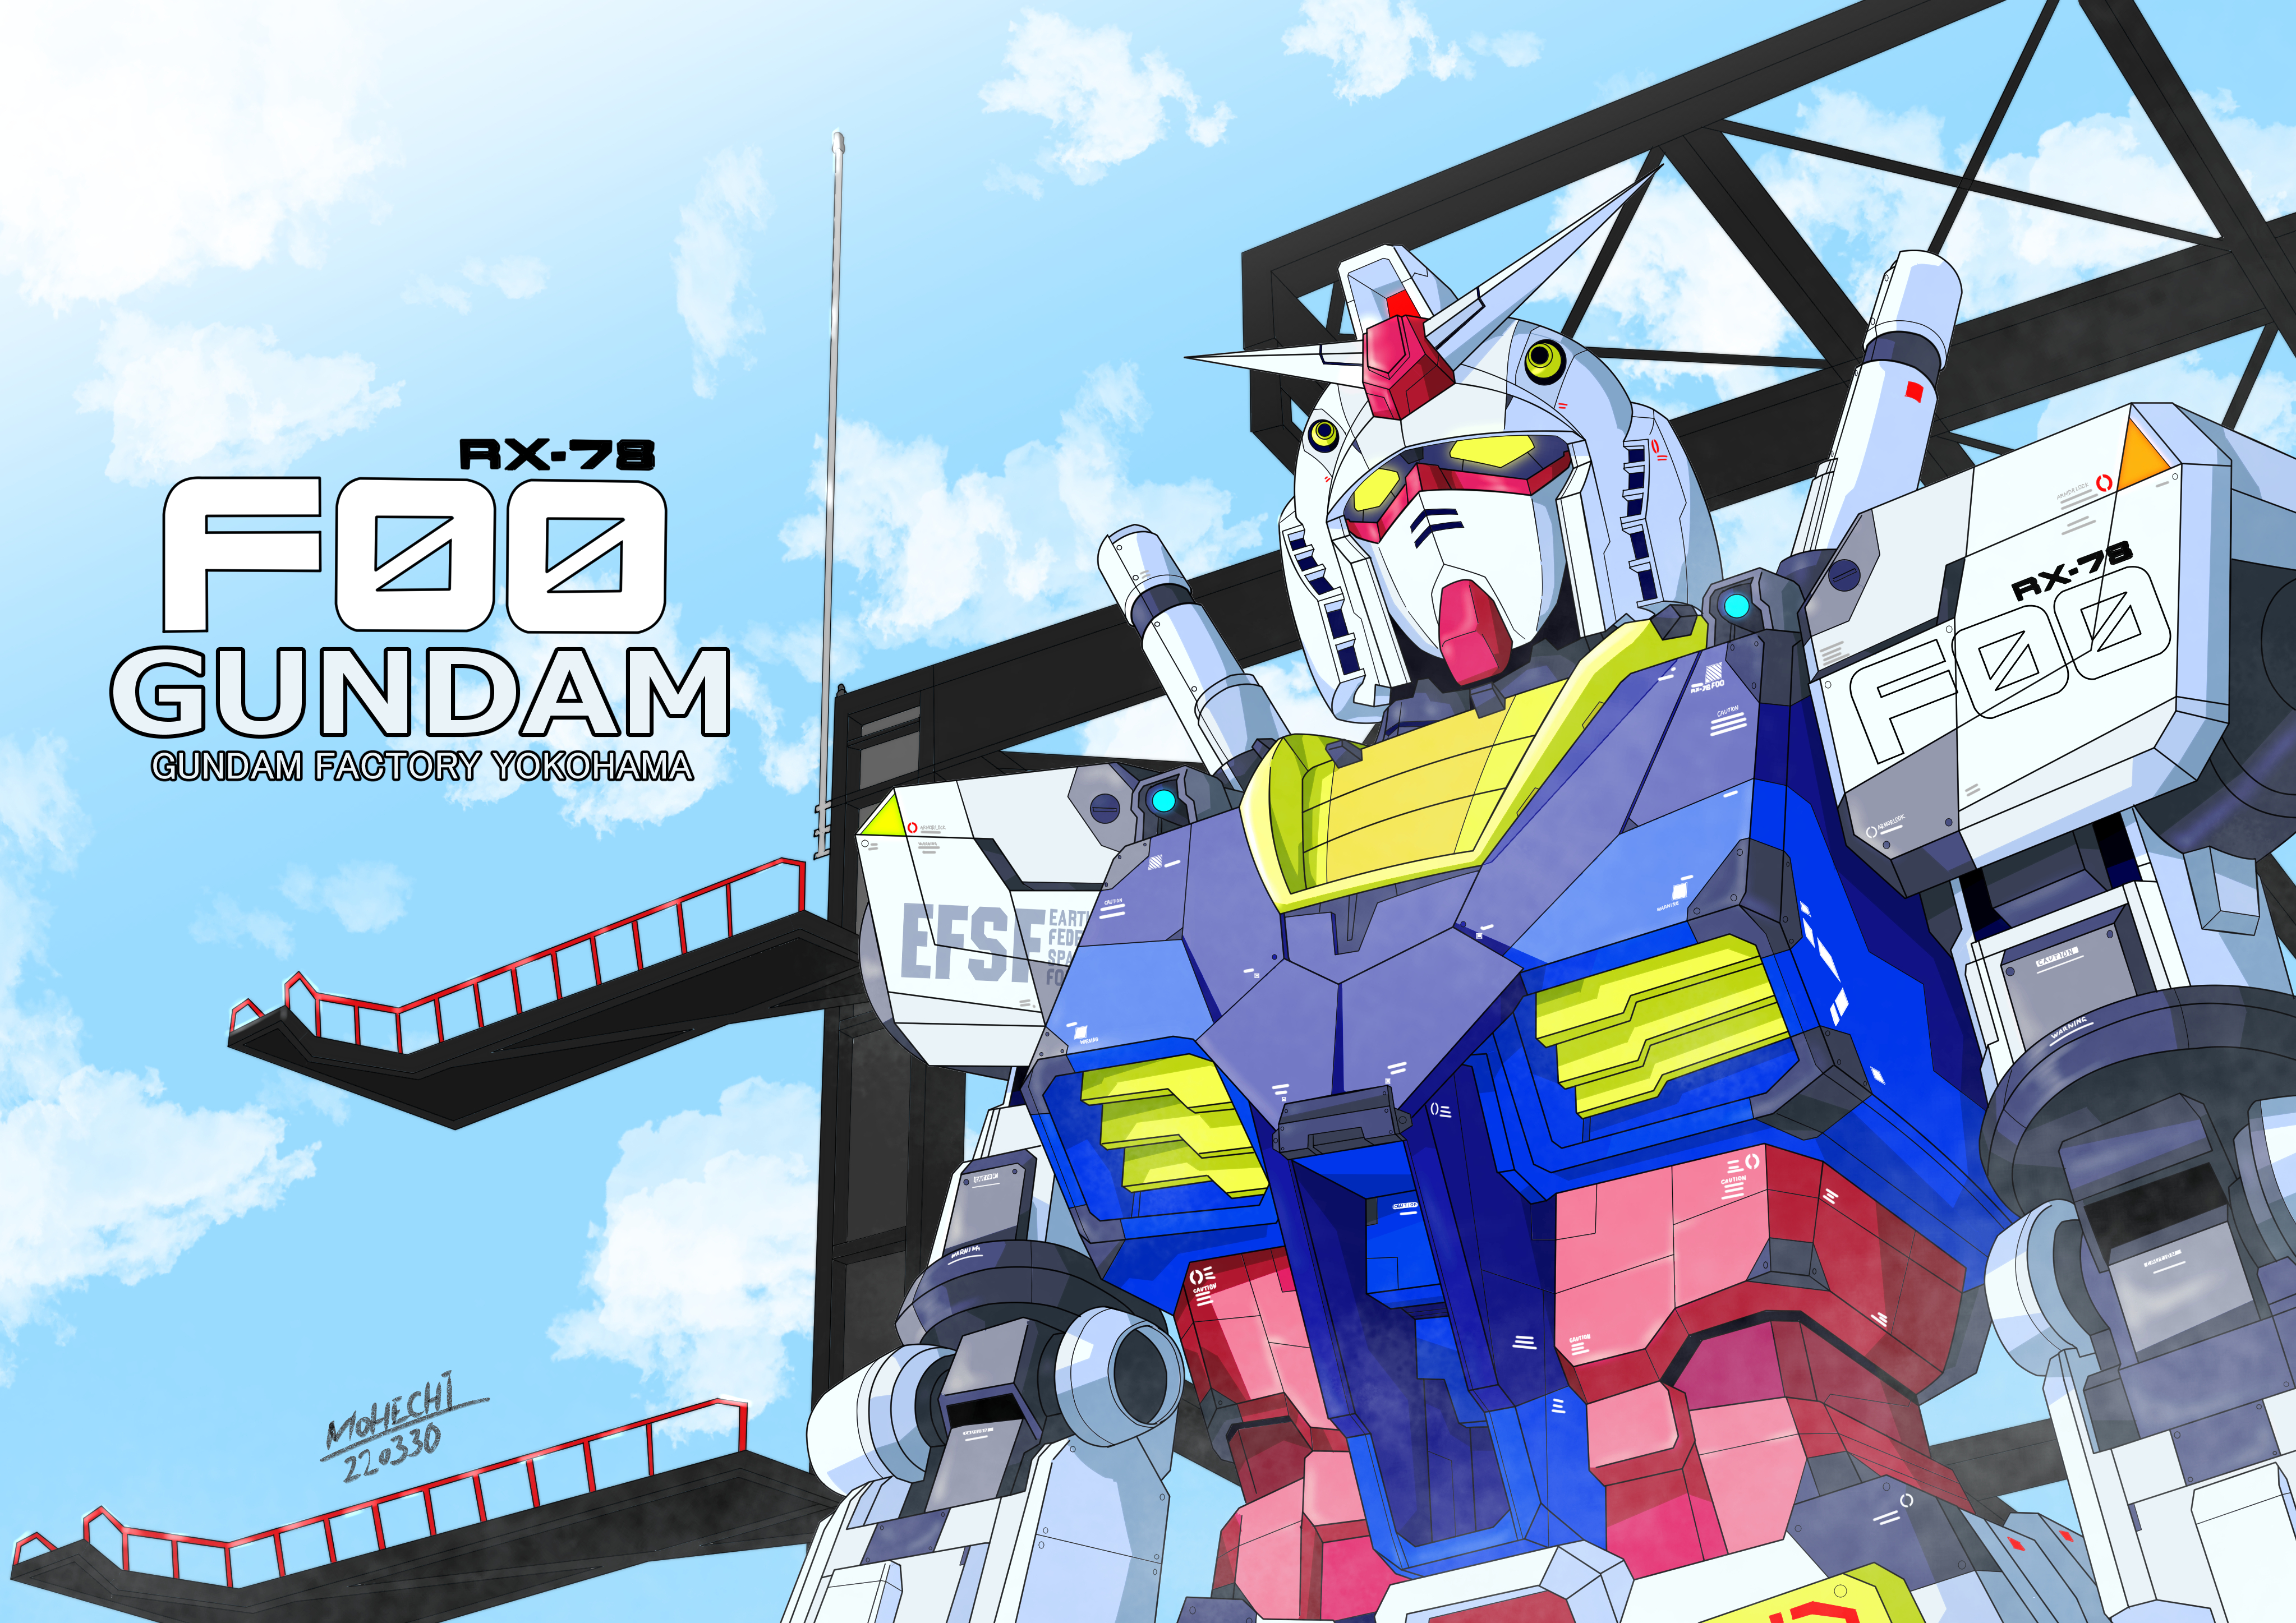 Anime 4093x2894 anime mechs Gundam Mobile Suit Gundam Super Robot Taisen RX-78 Gundam artwork digital art fan art